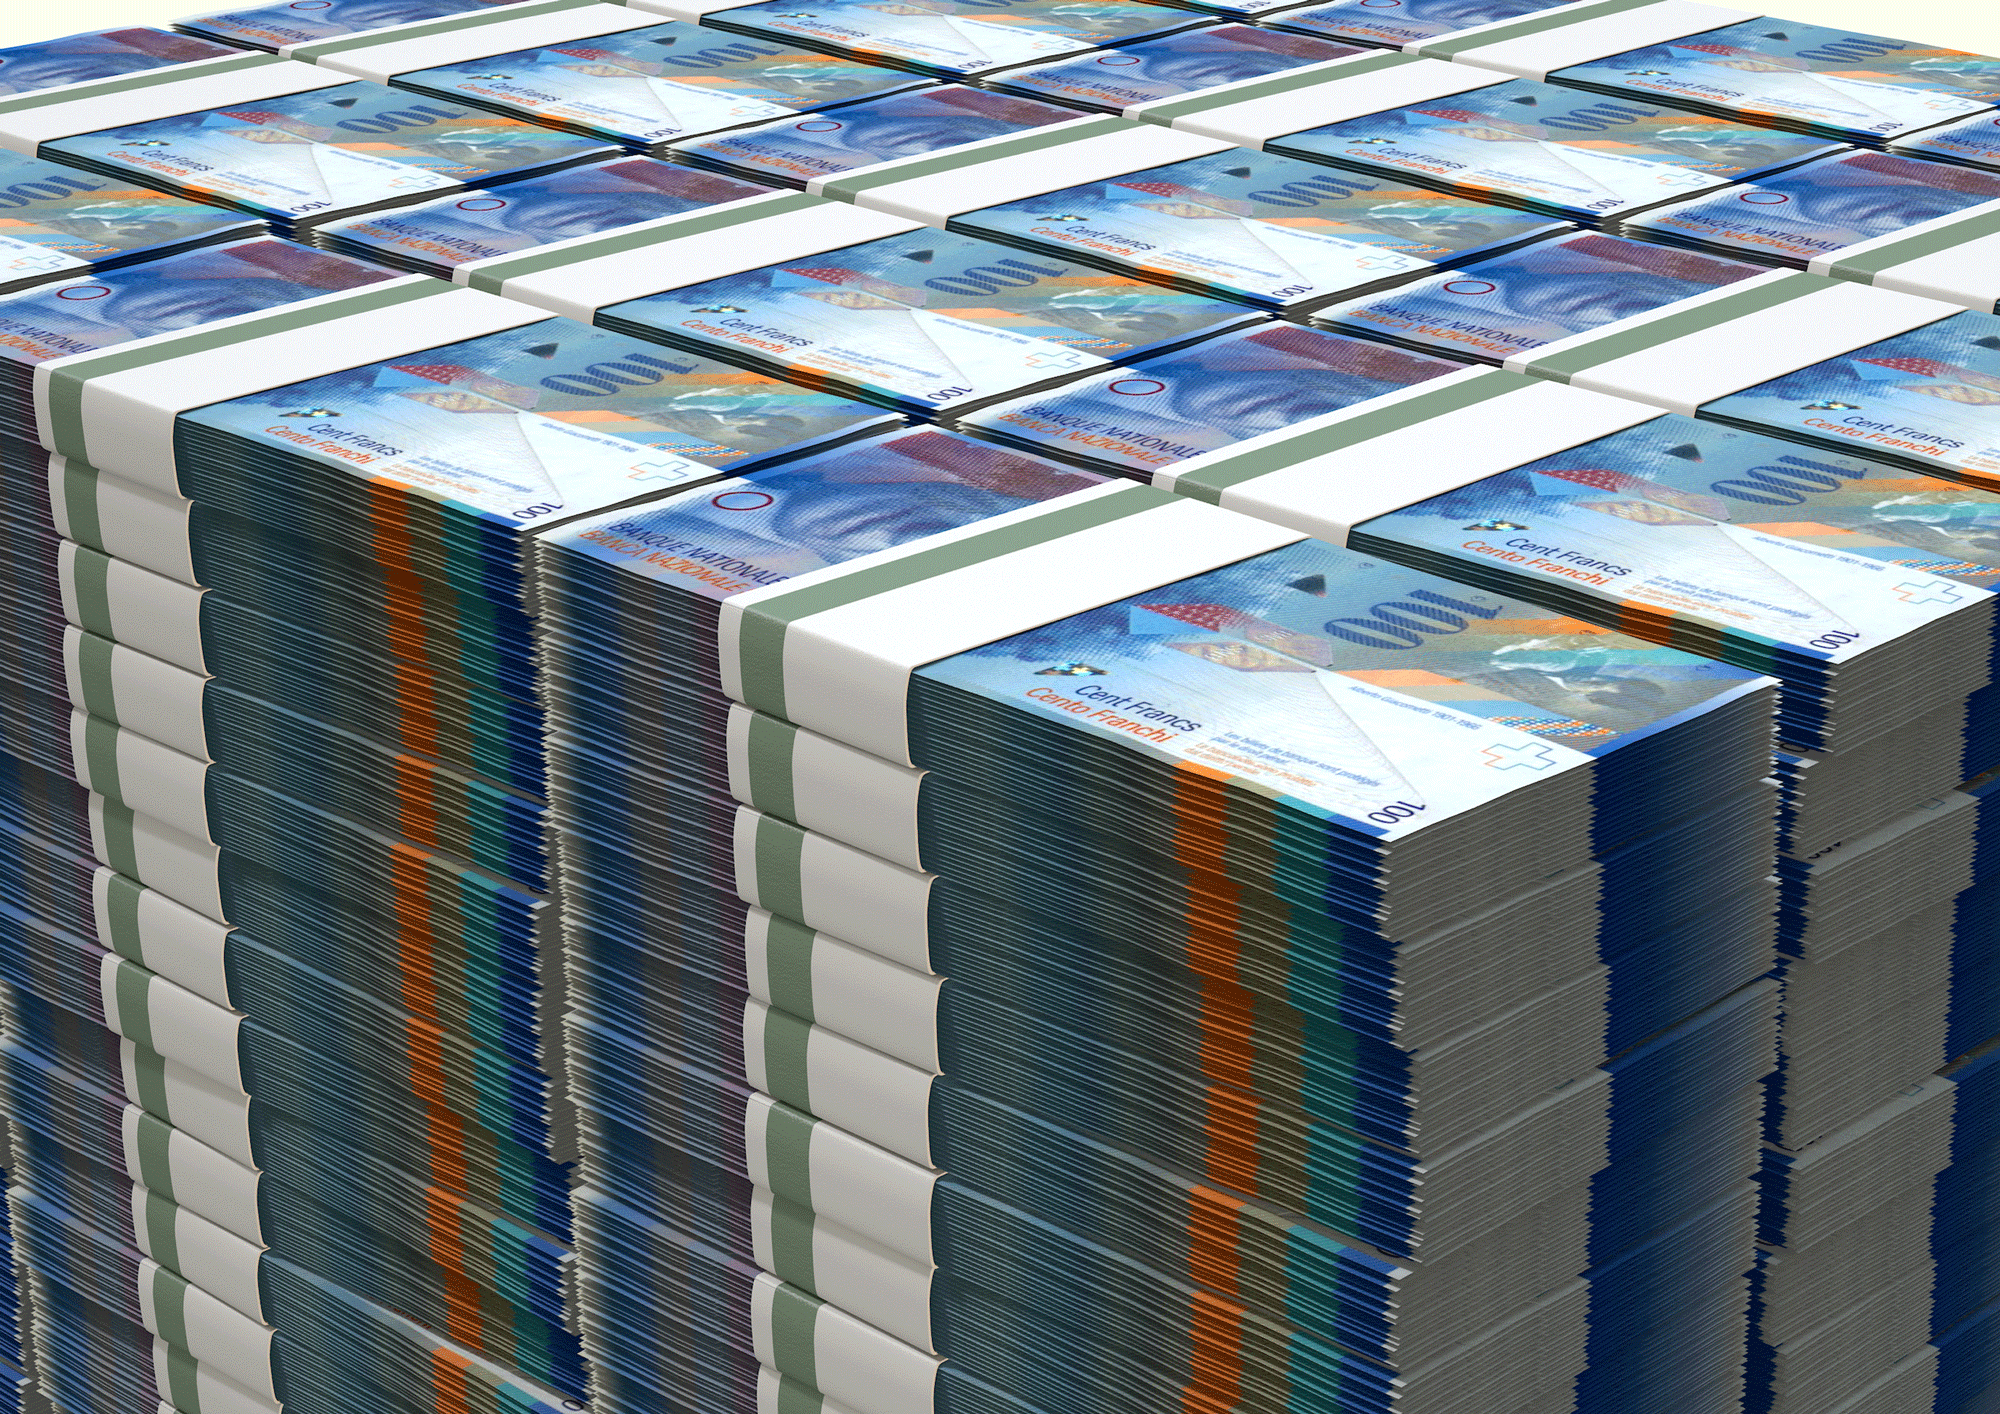 Quel est le volume d'un milliard de francs suisses? [Fotolia - alswart]